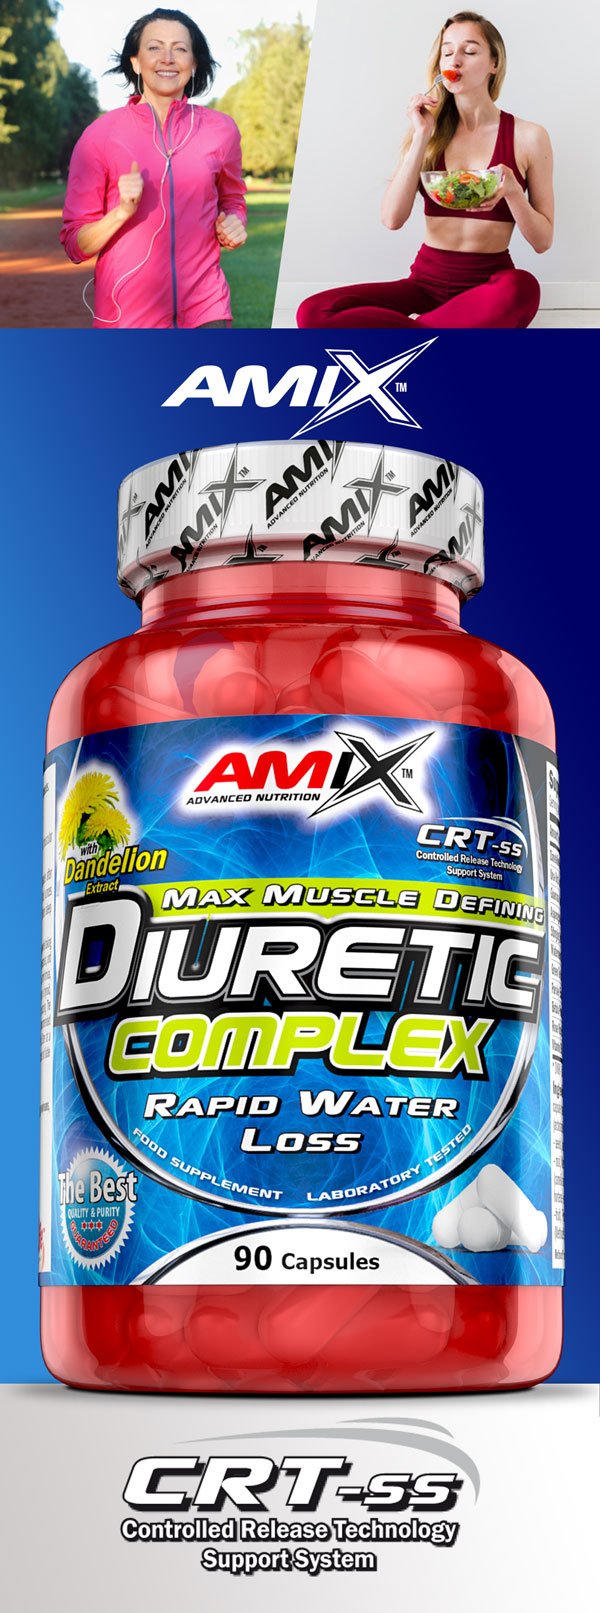 amix-diuretic-complex